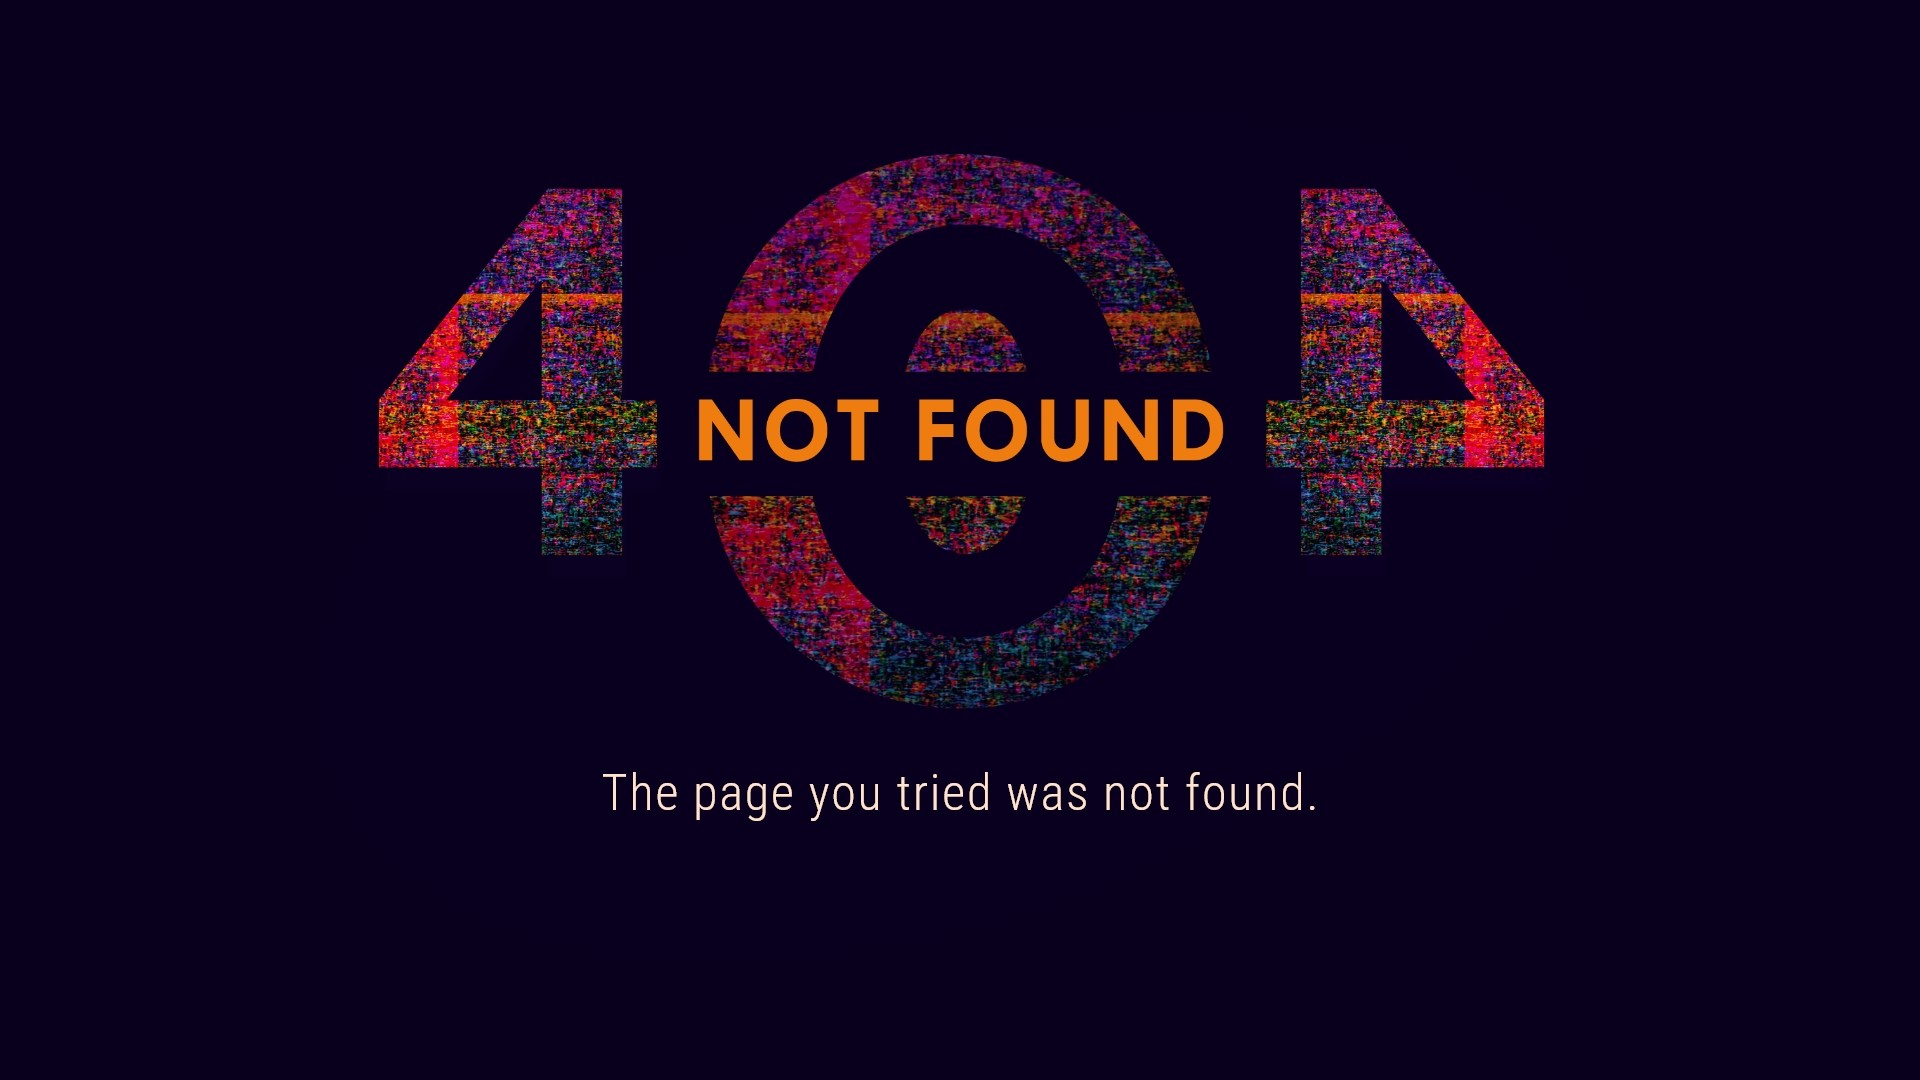 Error 404 Wallpapers